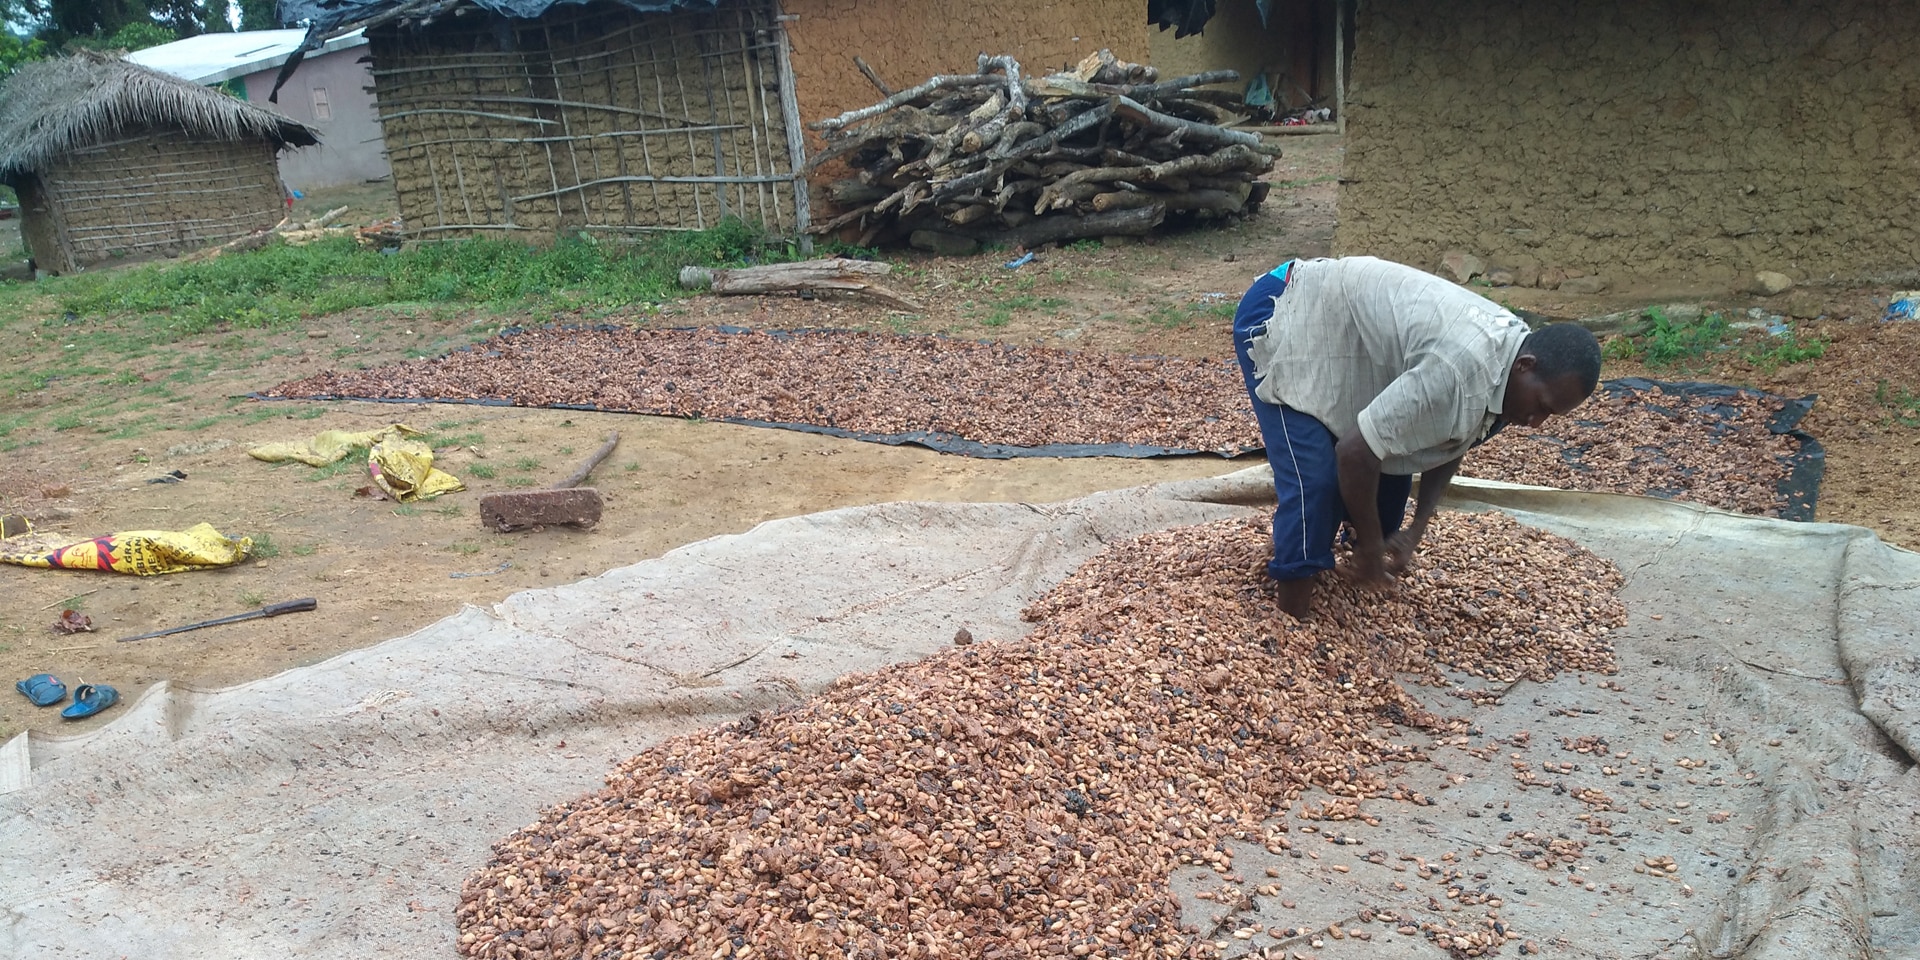  Un producteur étale des fèves de cacao sur une bâche en plastique pour les faire sécher. 